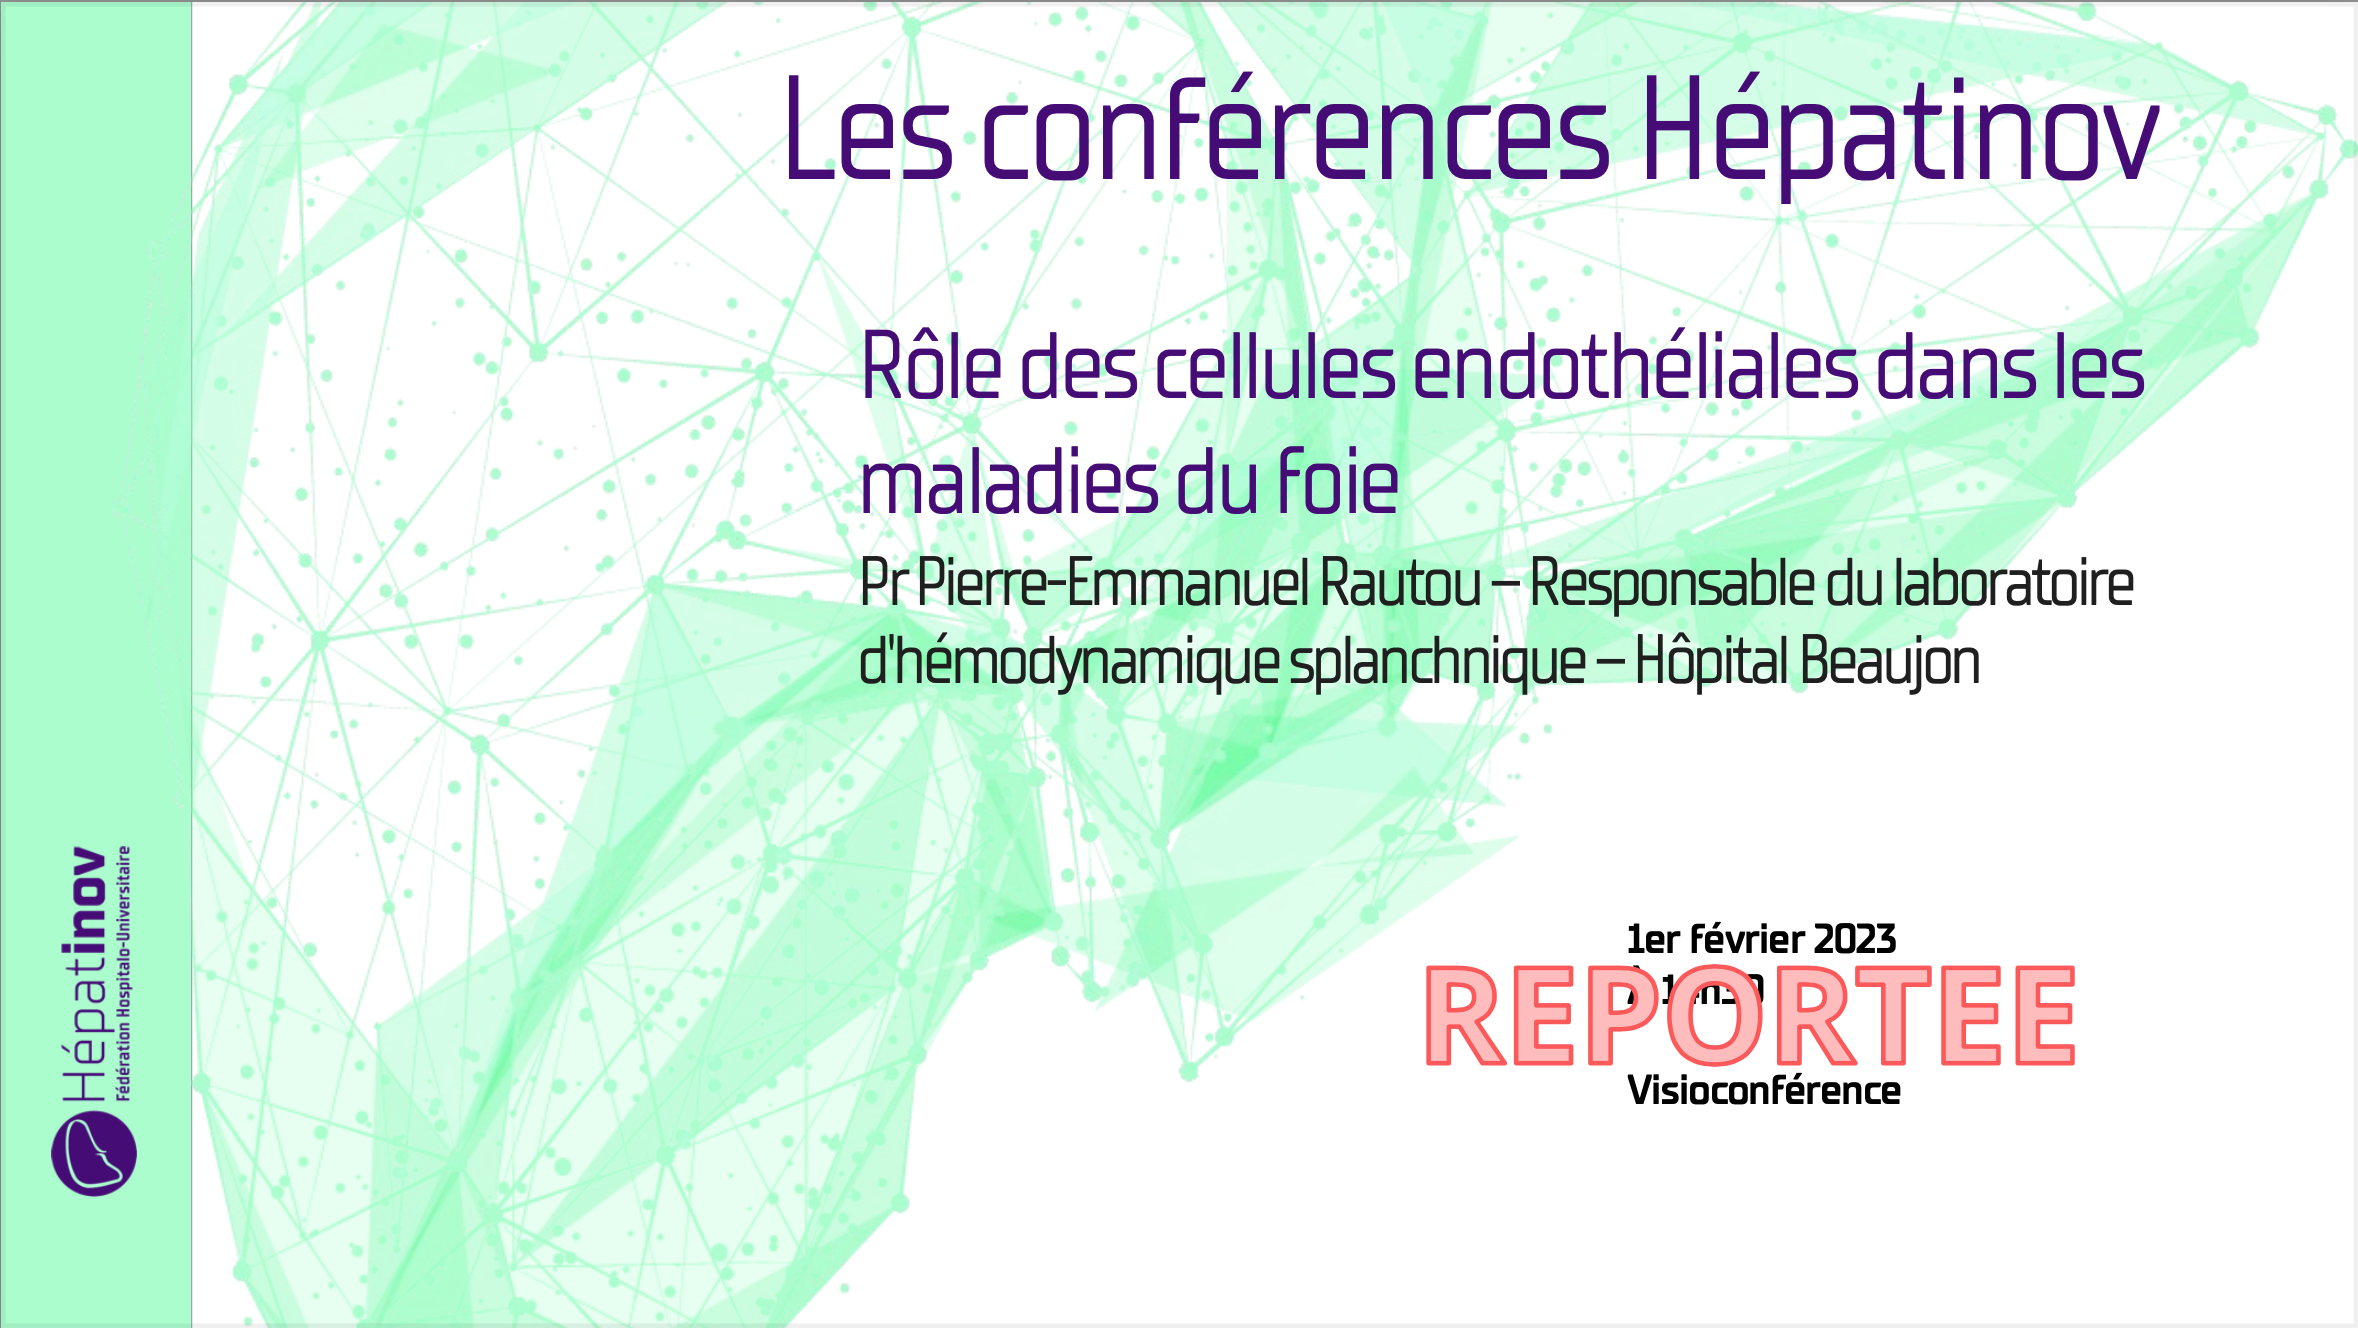 REPORT: Les conférences Hépatinov - Rôle des cellules endothéliales dans les maladies du foie